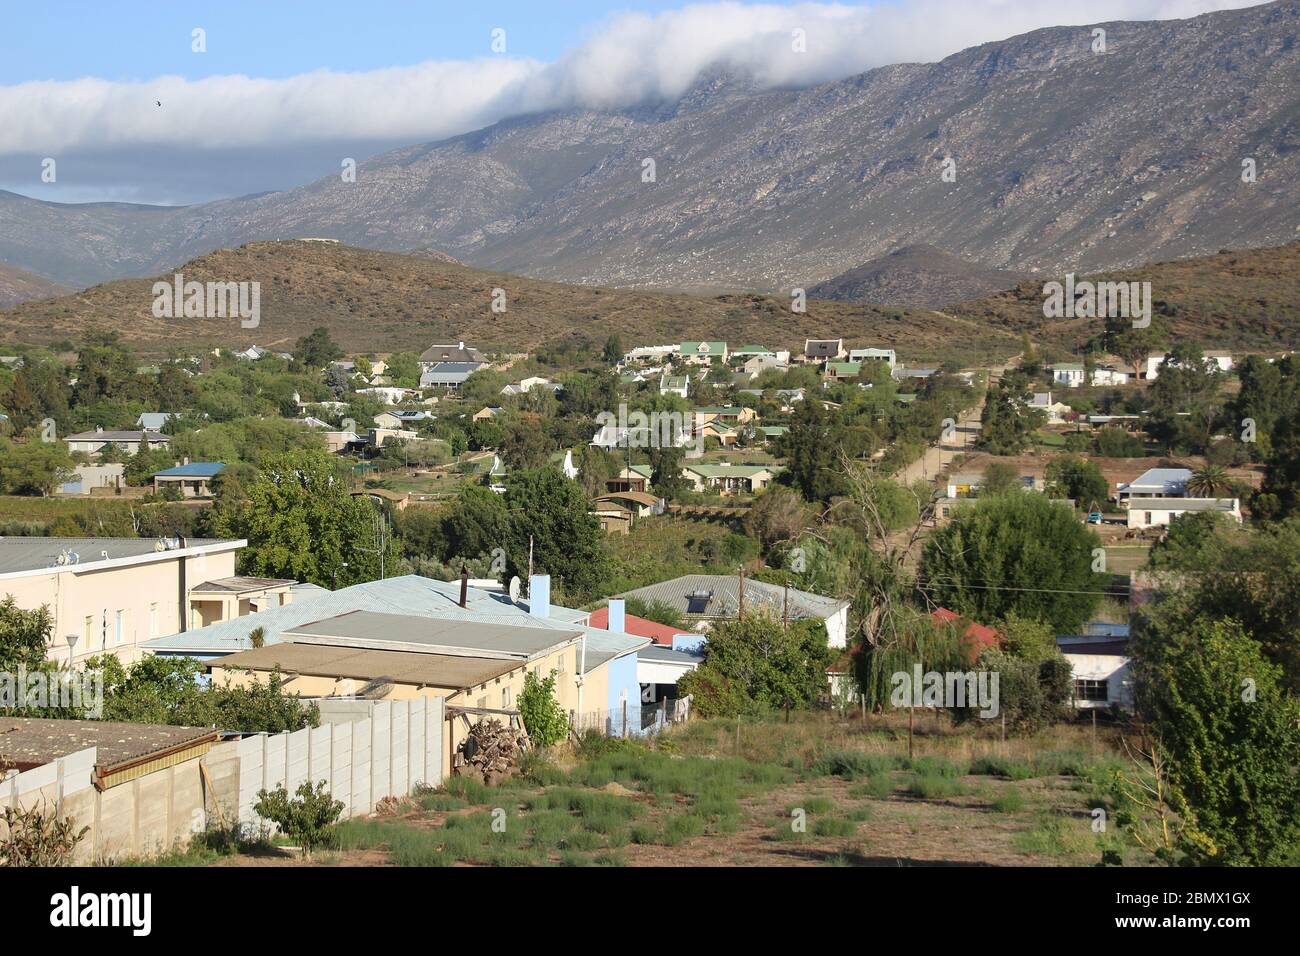 Blick auf die abgelegene Stadt Barrydale und die umliegende Berglandschaft. Barrydale liegt in der Karoo, an der Route 62. Südafrika, Afrika. Stockfoto